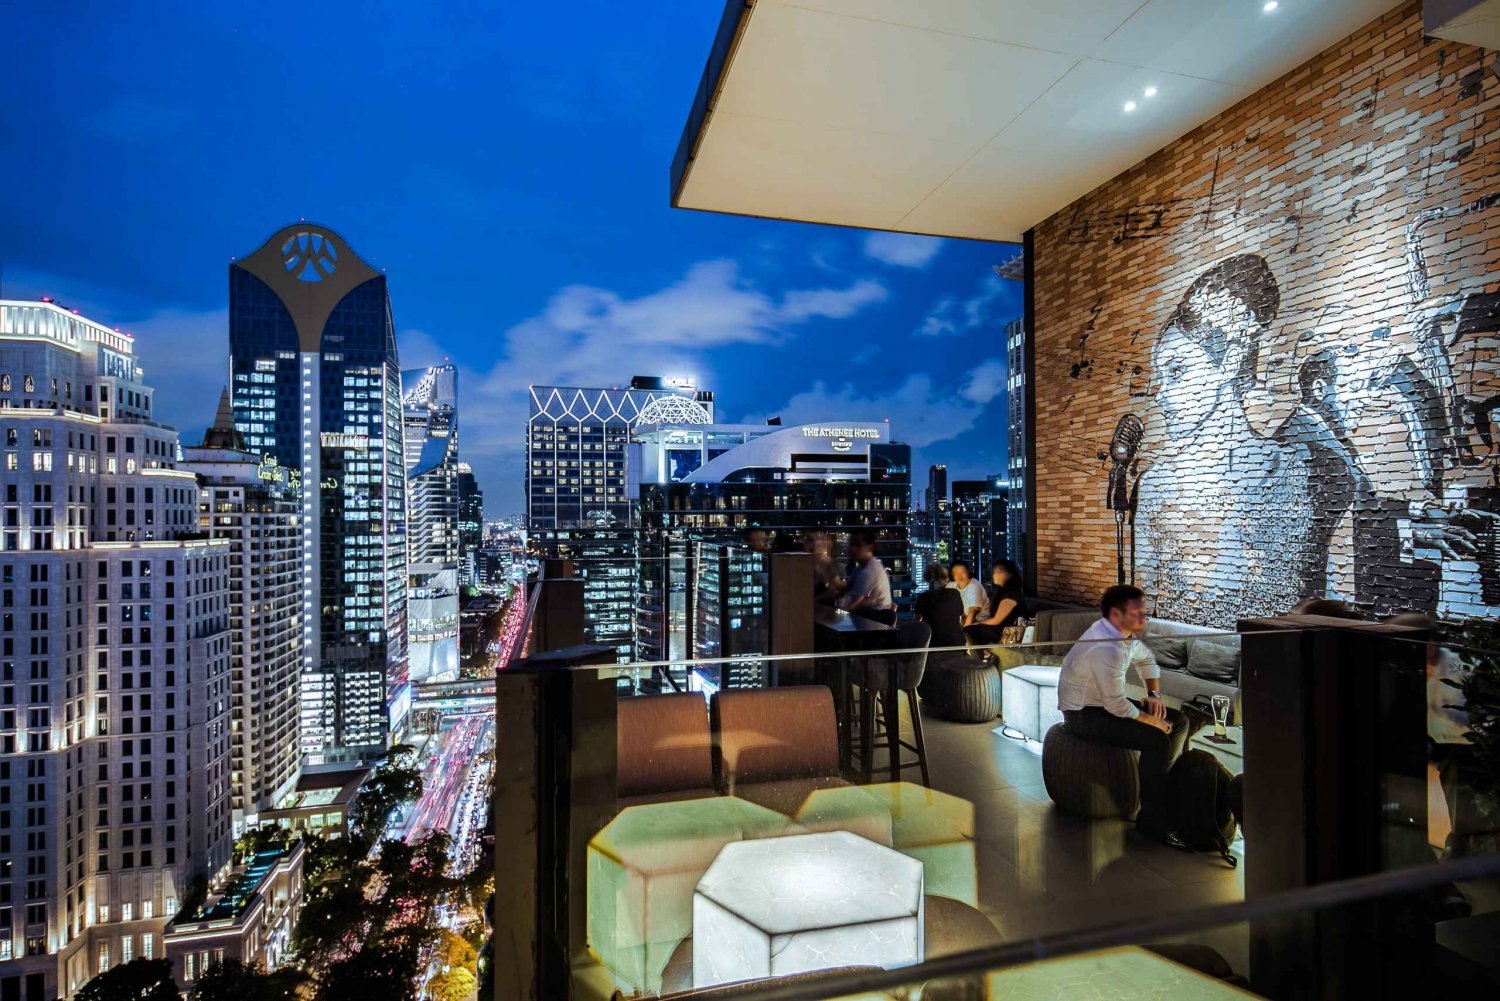 Bangkok: Hotel Indigo CHAR Rooftop Bar Drink Voucher